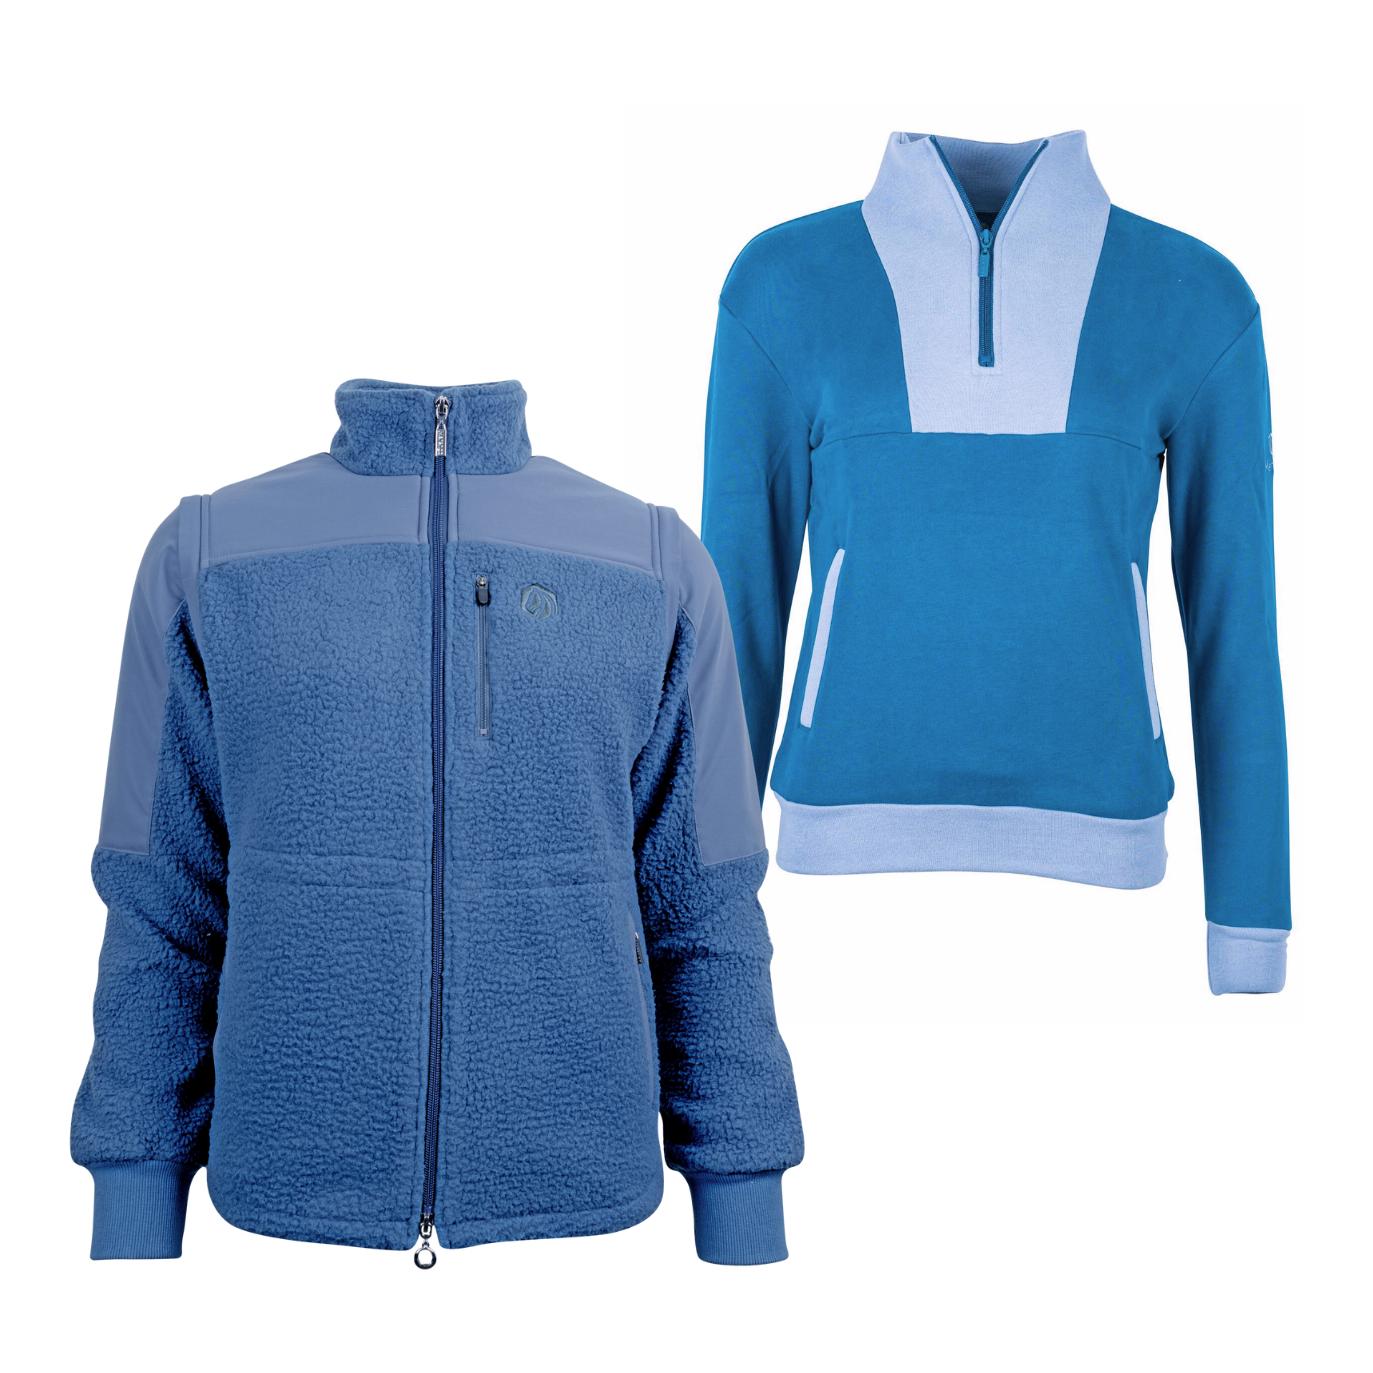 Marengo Outfit-Set Cosy Rides - Teddyfleece-Jacke & Zip Sweatshirt Farbe: Calm Blue / Ocean Blue, Grösse Pullover: L, Grösse Jacke: S von Marengo